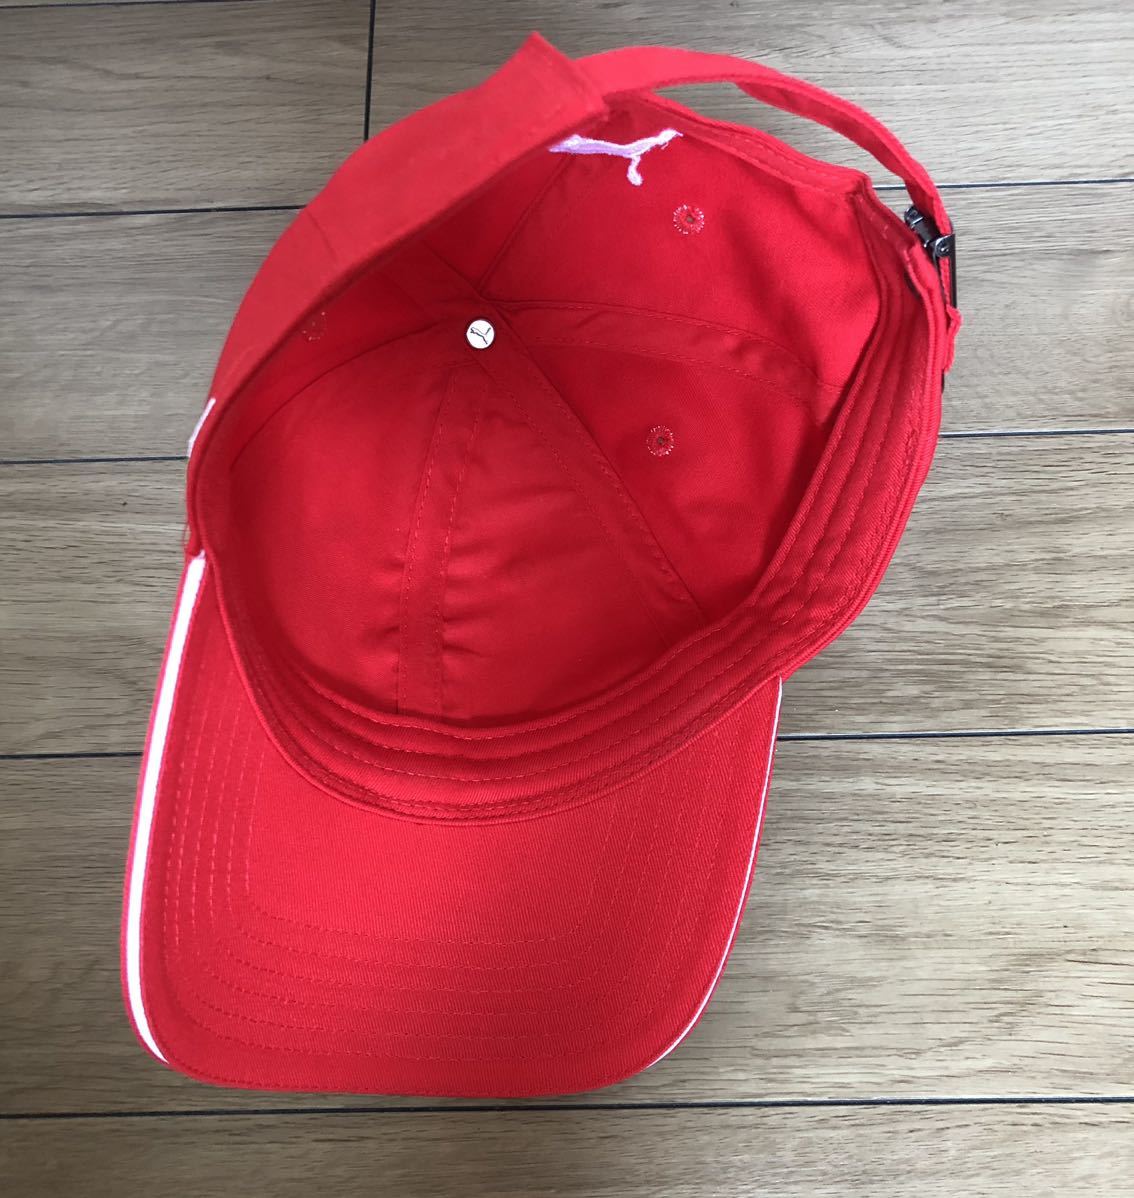 PUMA Ferrari キャップ Youth ストラップバック 赤 プーマ フェラーリ 53-58cm 美品 帽子 キッズ_画像7